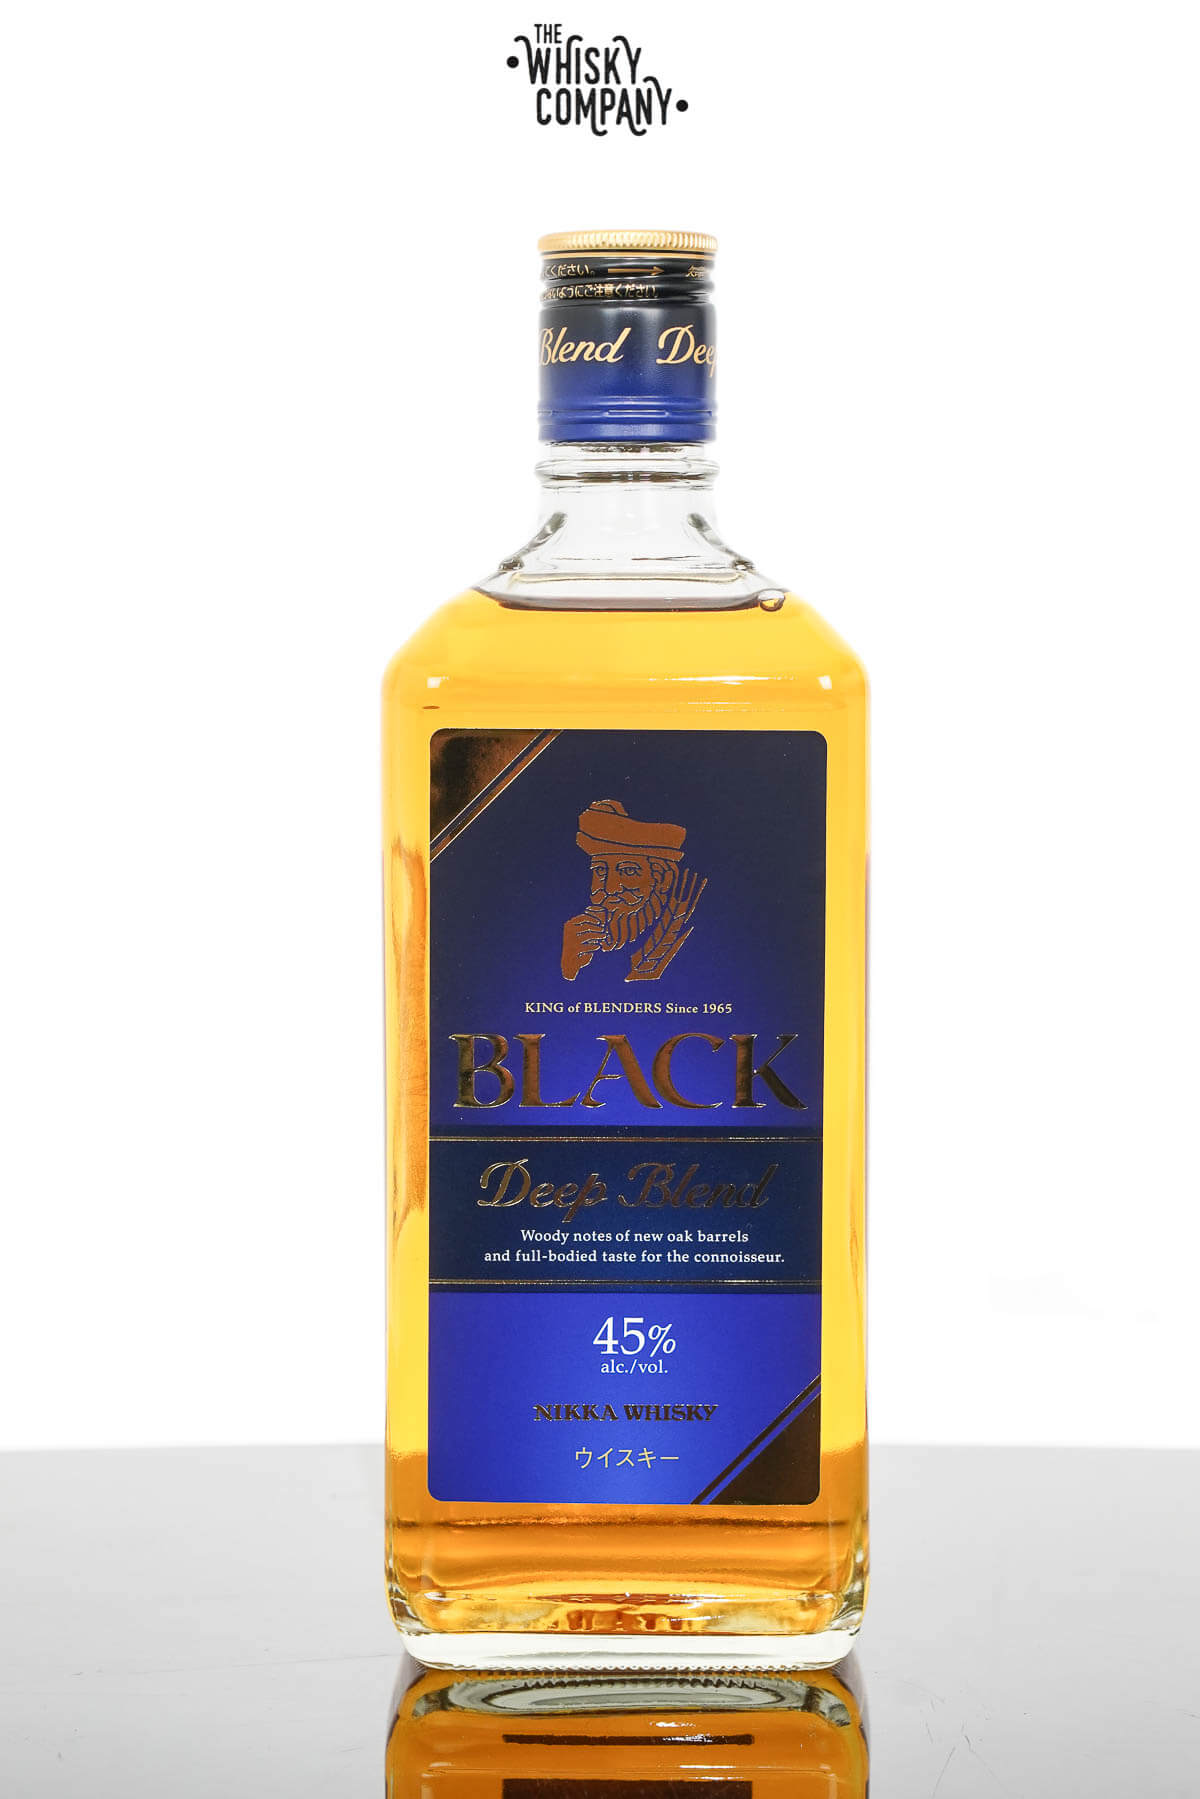 Nikka From The Barrel Japanese Whisky Japan -750 ml